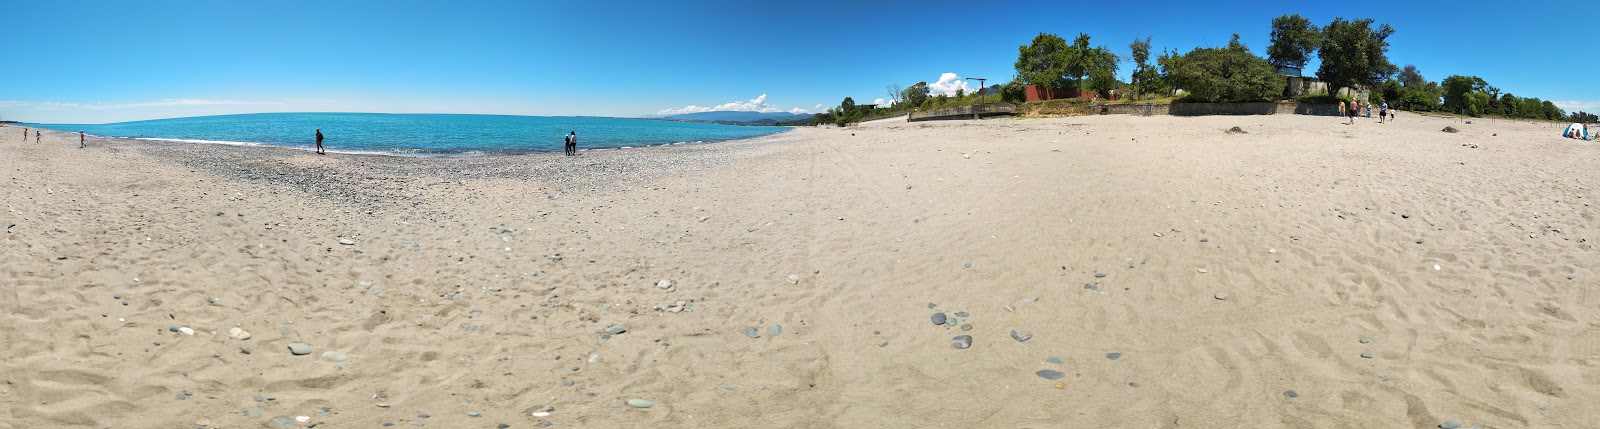 Foto av Tkhubuni beach med lång rak strand